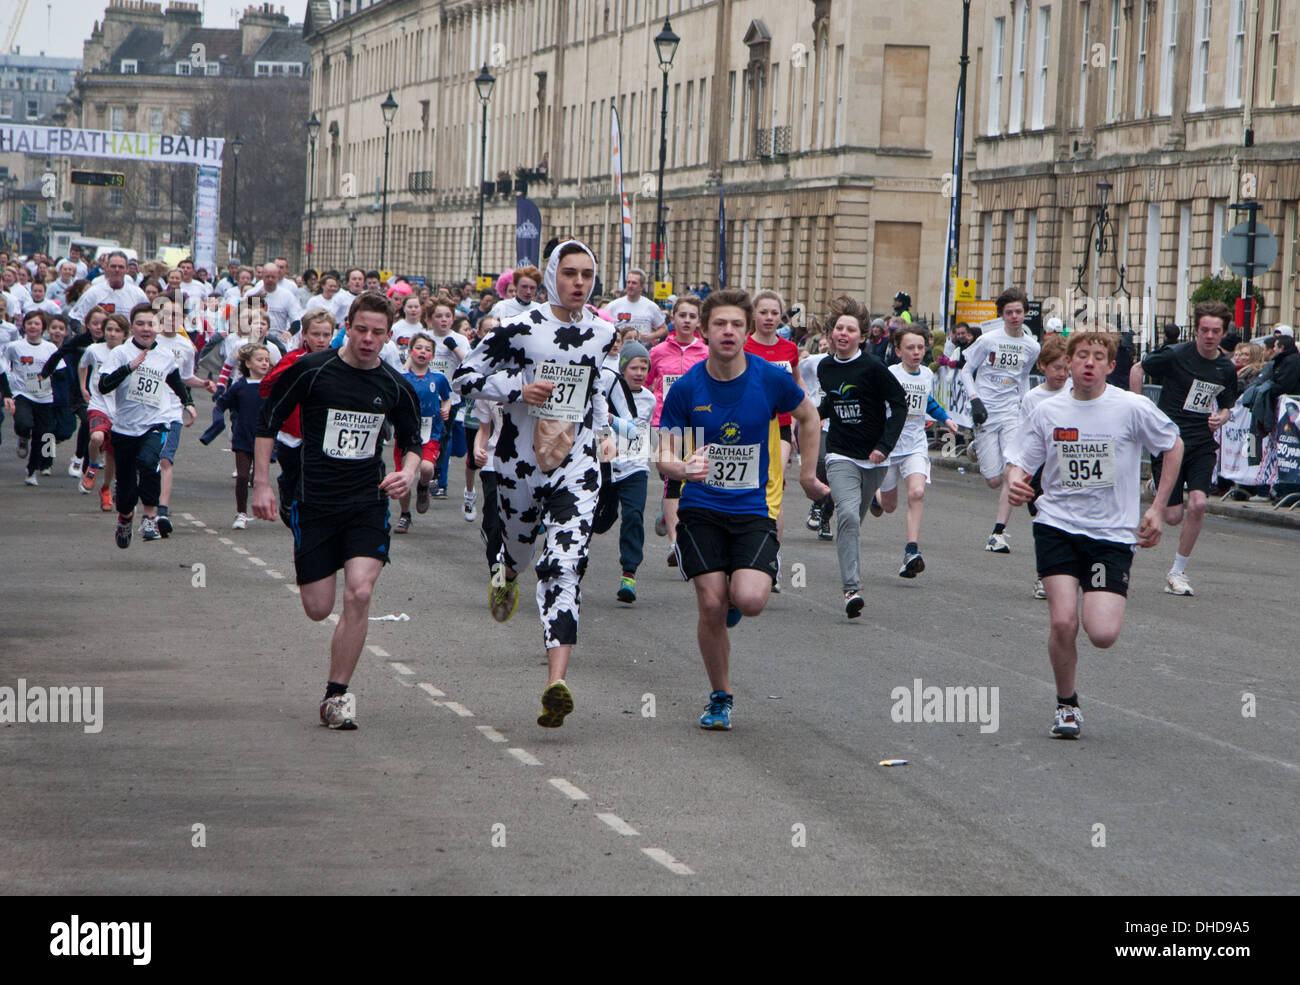 Competitors running in the annual Bath half marathon event family fun run: 3 March 2013 Stock Photo